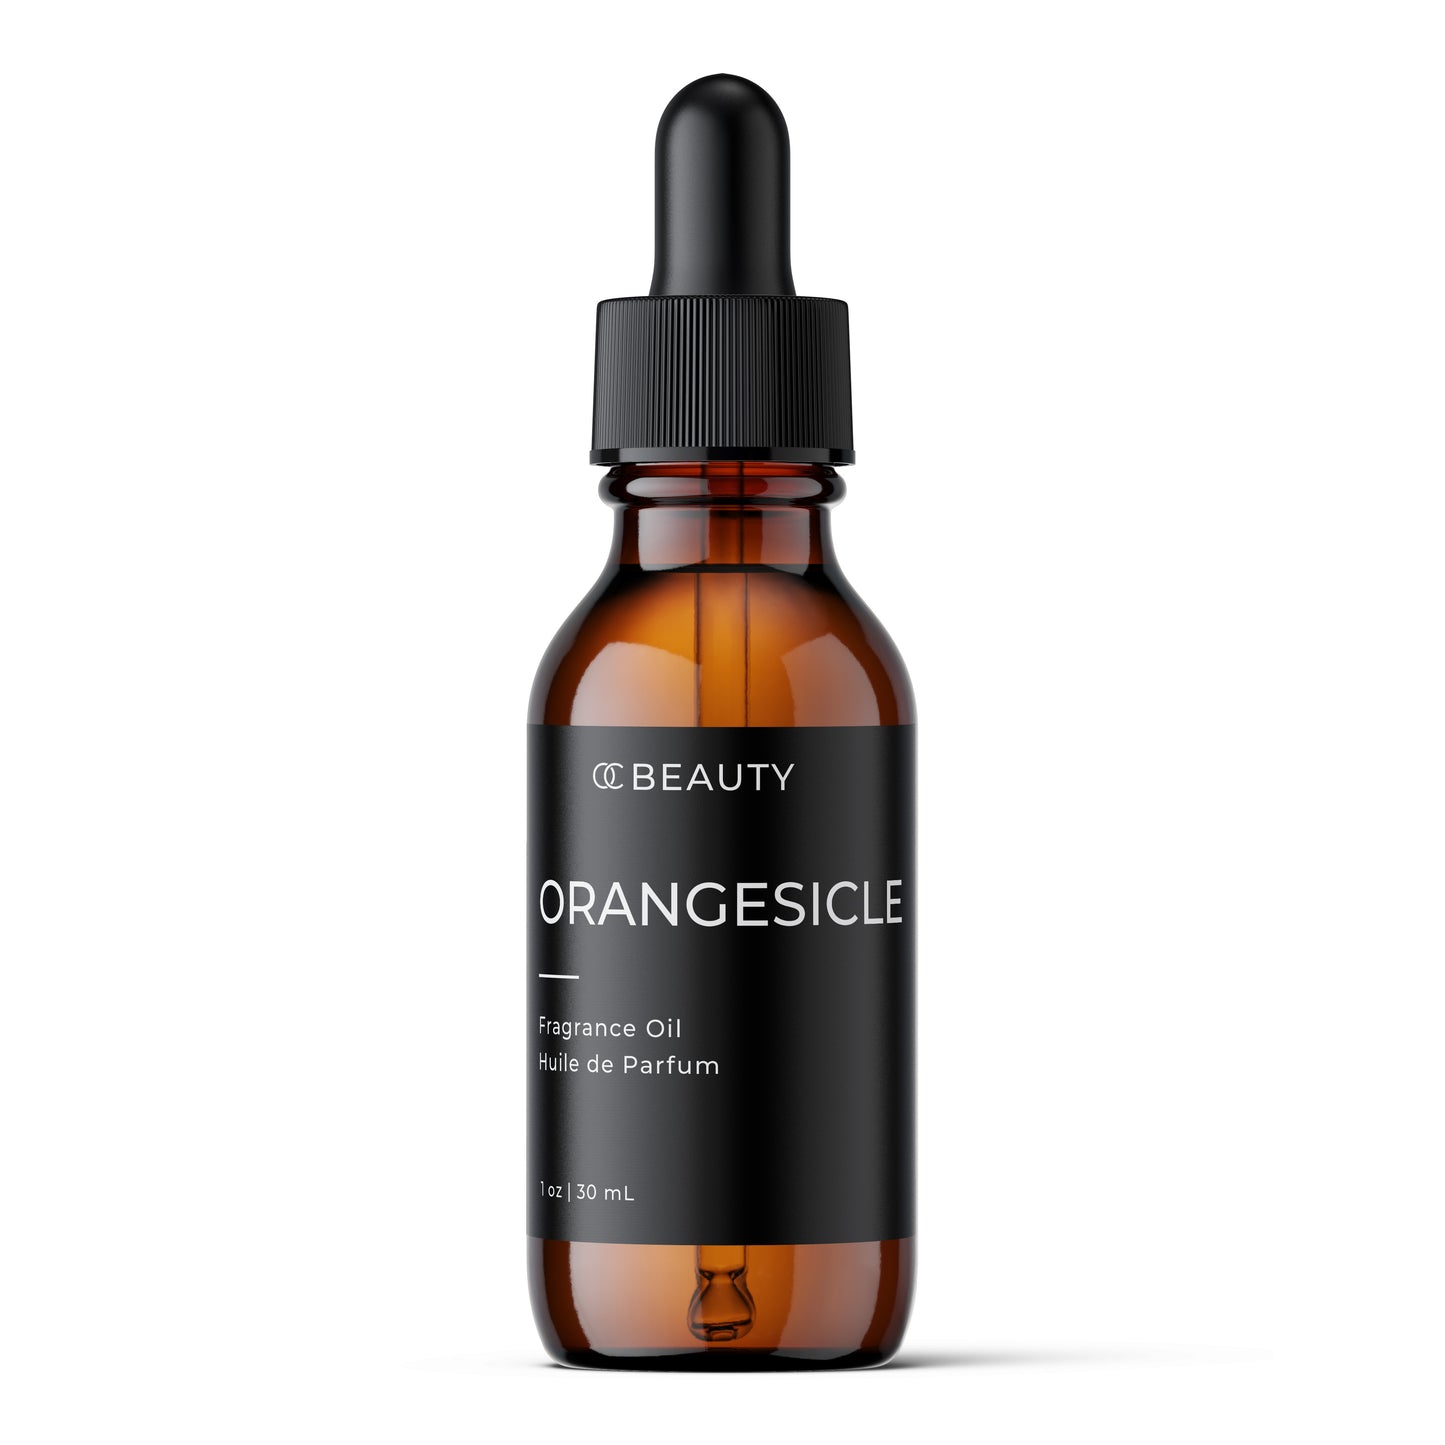 Orangesicle Fragrance Oil